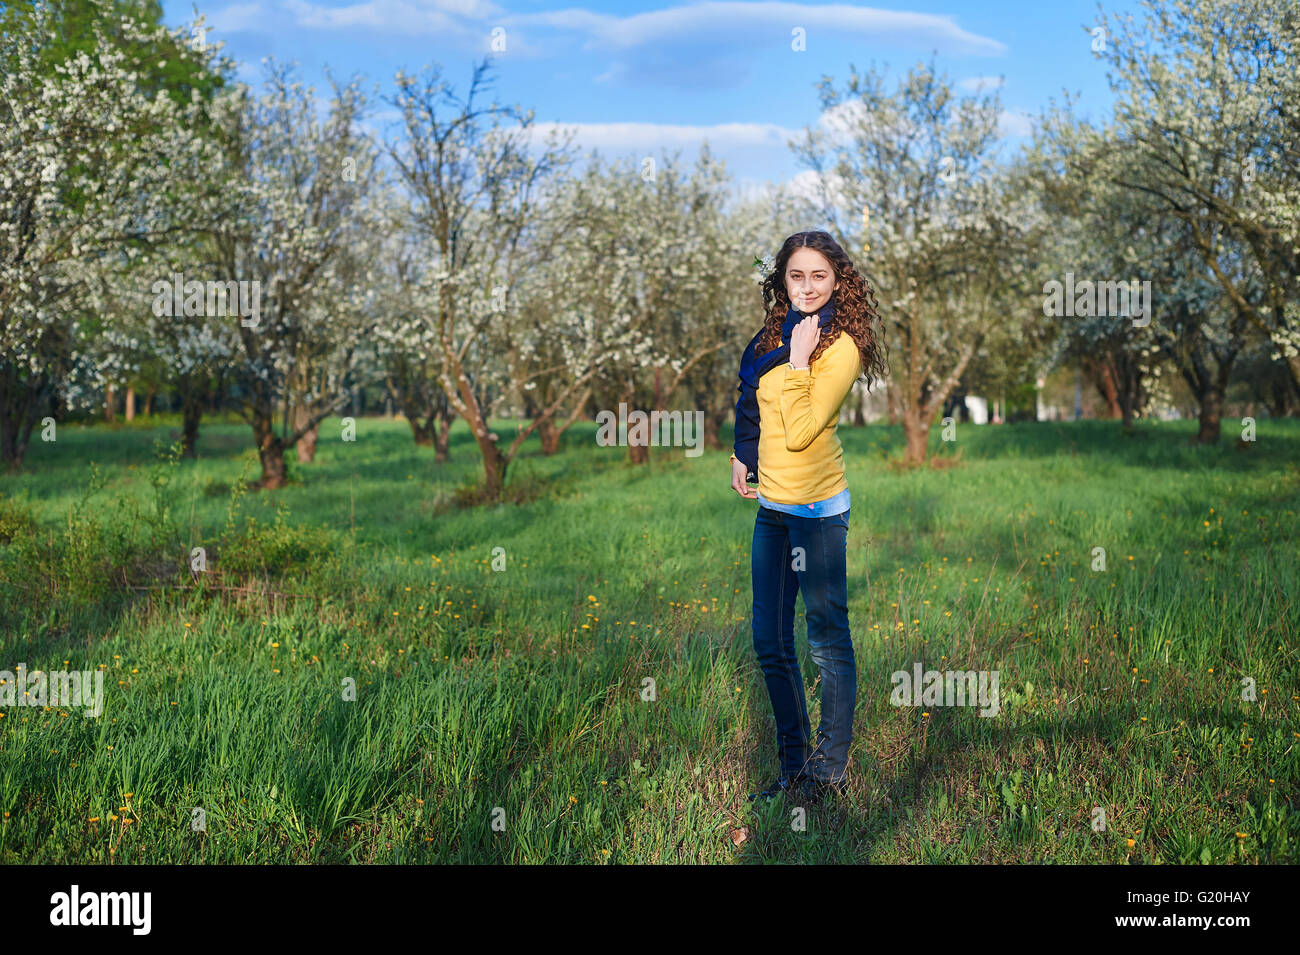 schöne junge Frau, die zu Fuß in einer blühenden Frühlingsgarten Stockfoto